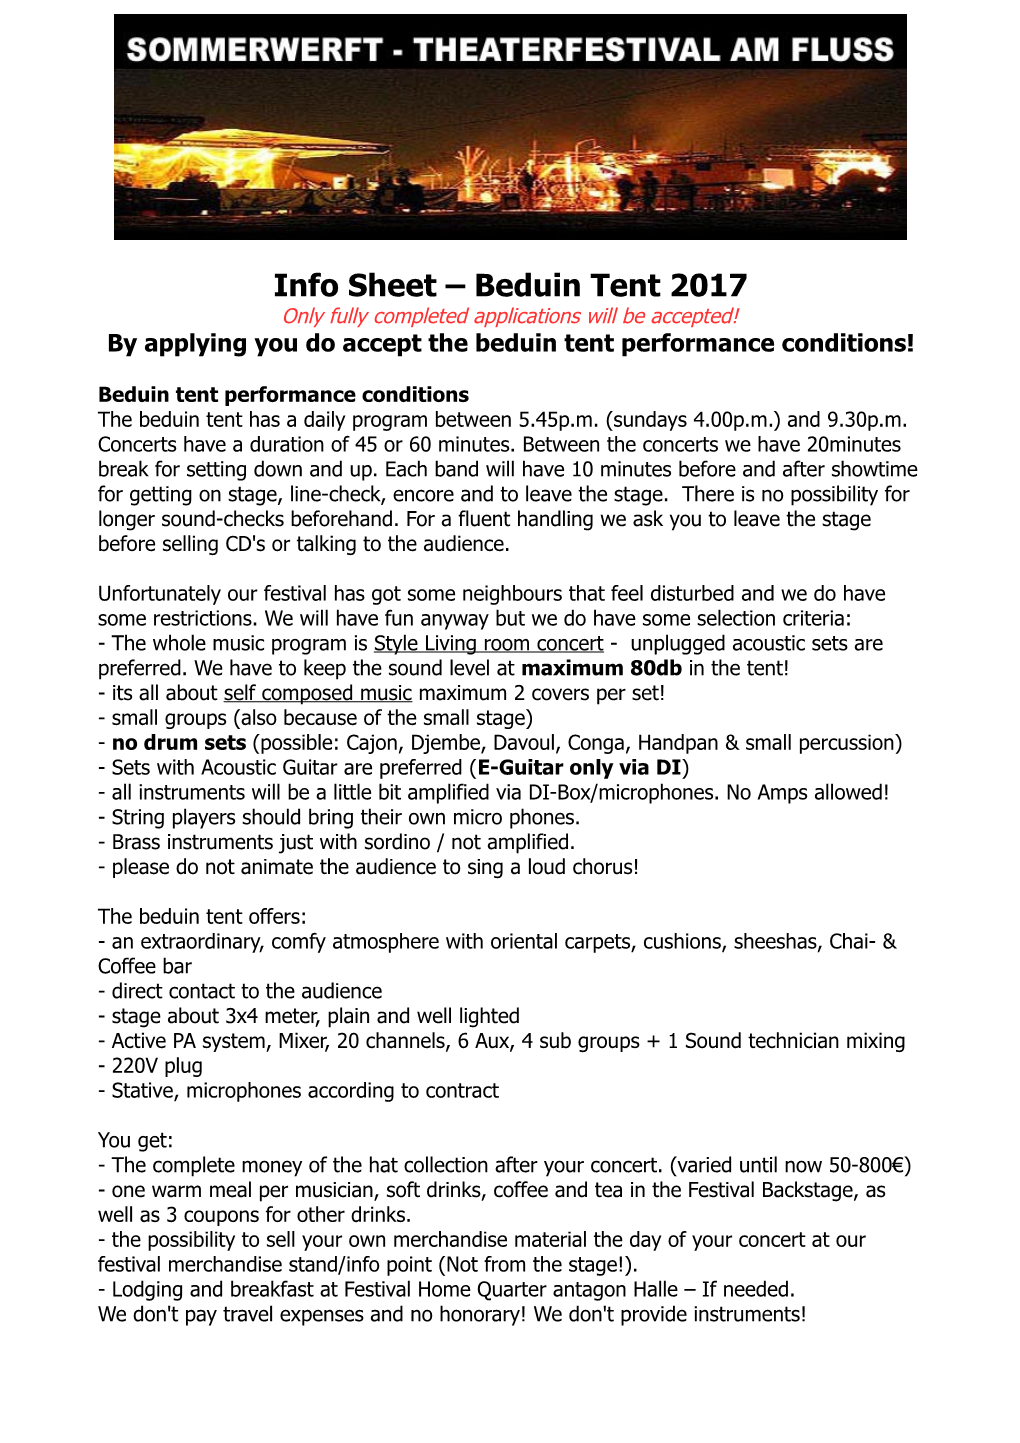 Info Sheet Beduin Tent 2017